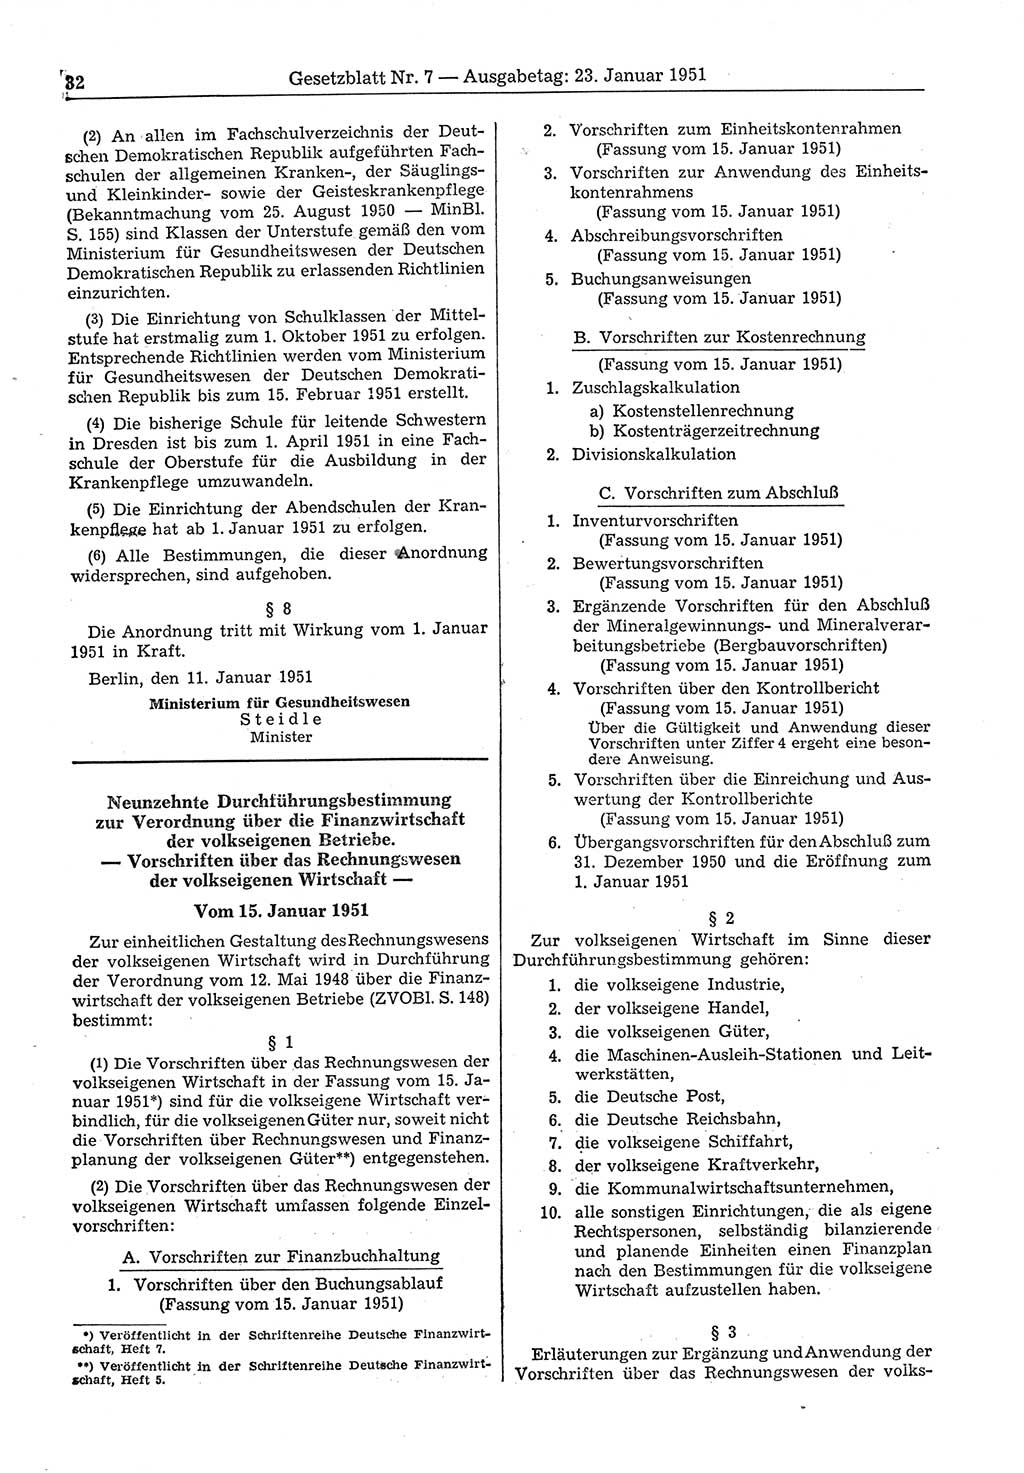 Gesetzblatt (GBl.) der Deutschen Demokratischen Republik (DDR) 1951, Seite 32 (GBl. DDR 1951, S. 32)